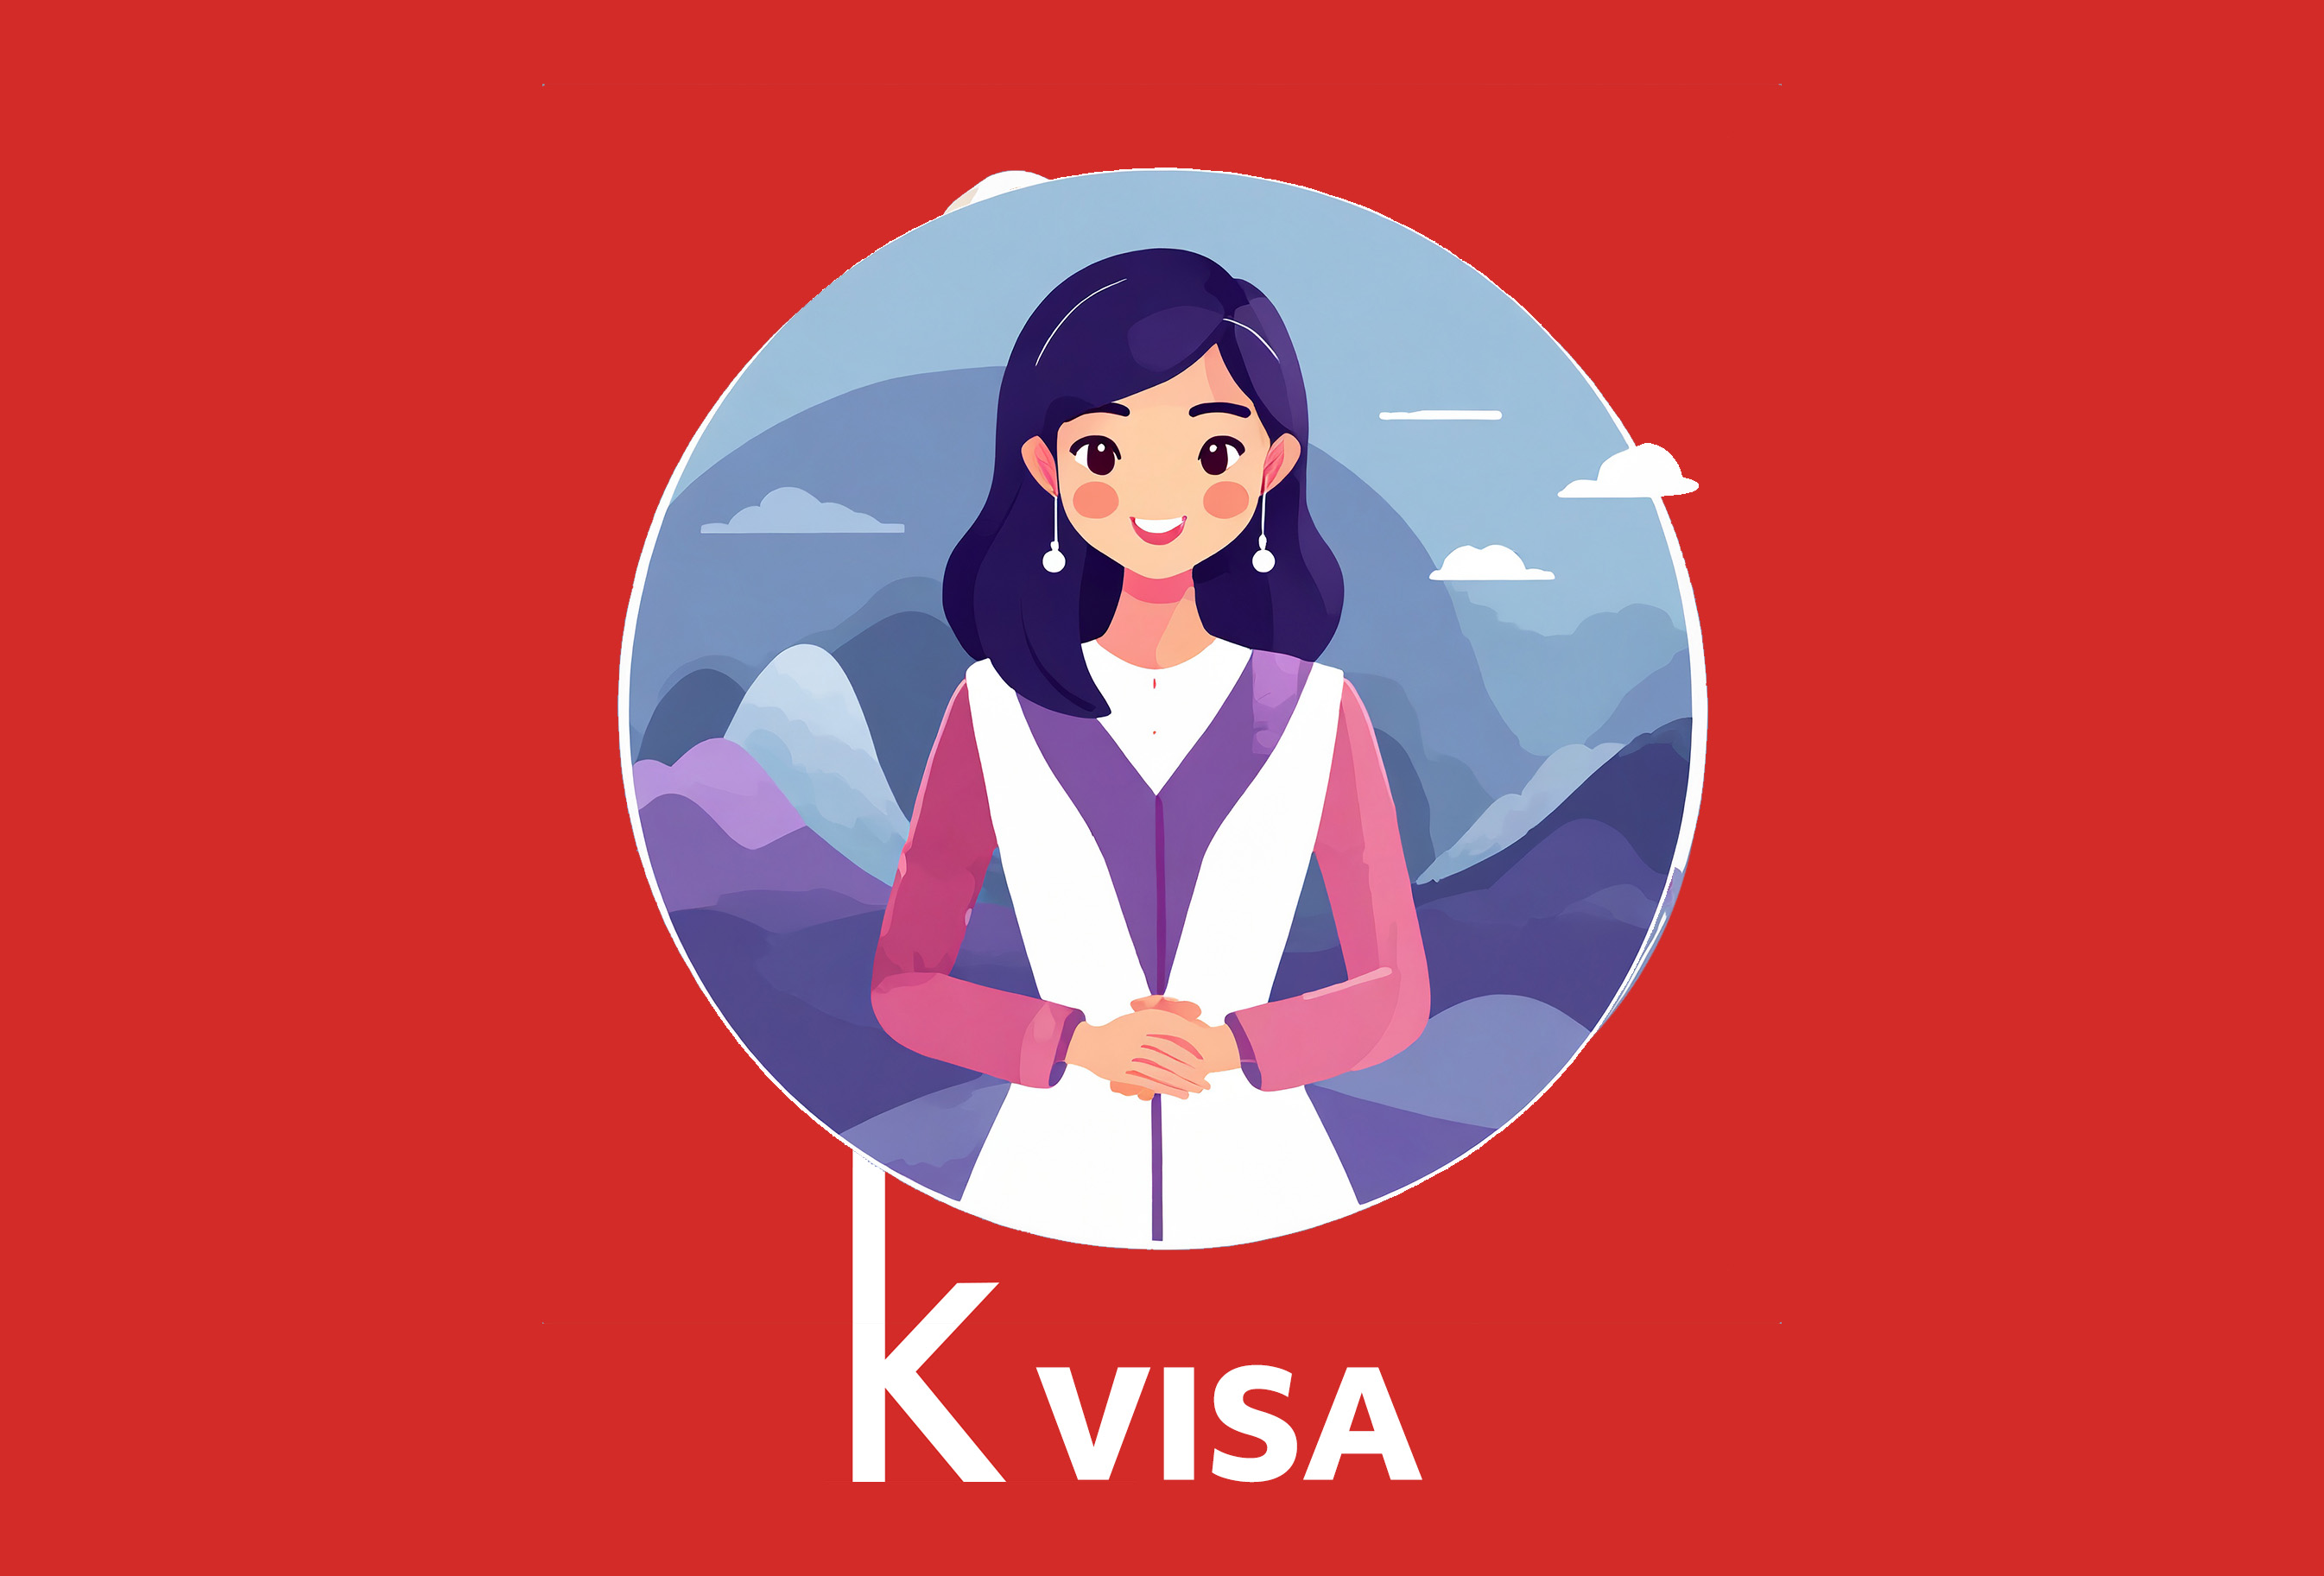 F4 Visa profile.jpg